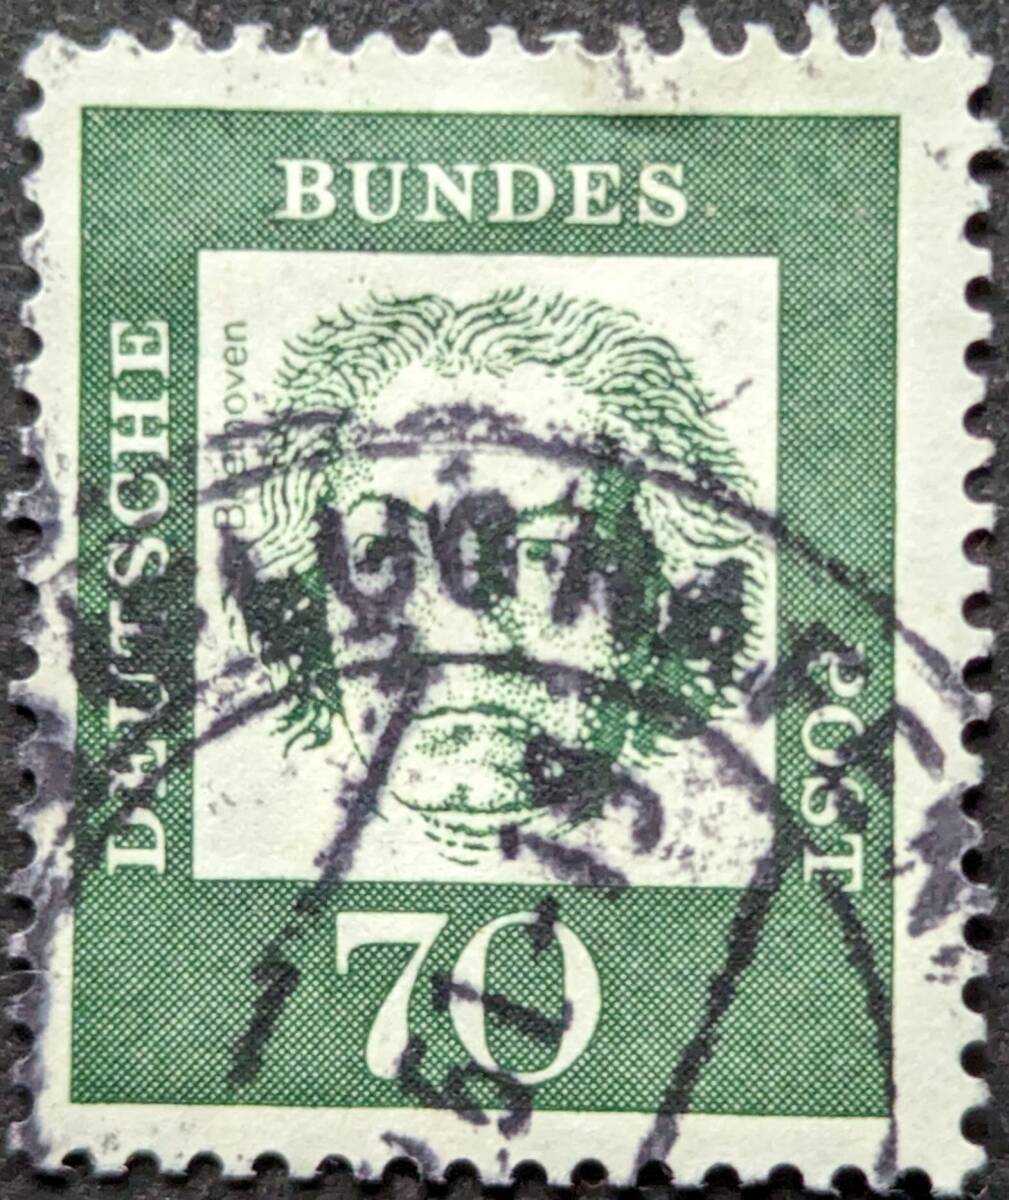 【外国切手】 ドイツ 1961年 発行 有名なドイツ人 - 蛍光紙 消印付き_画像1